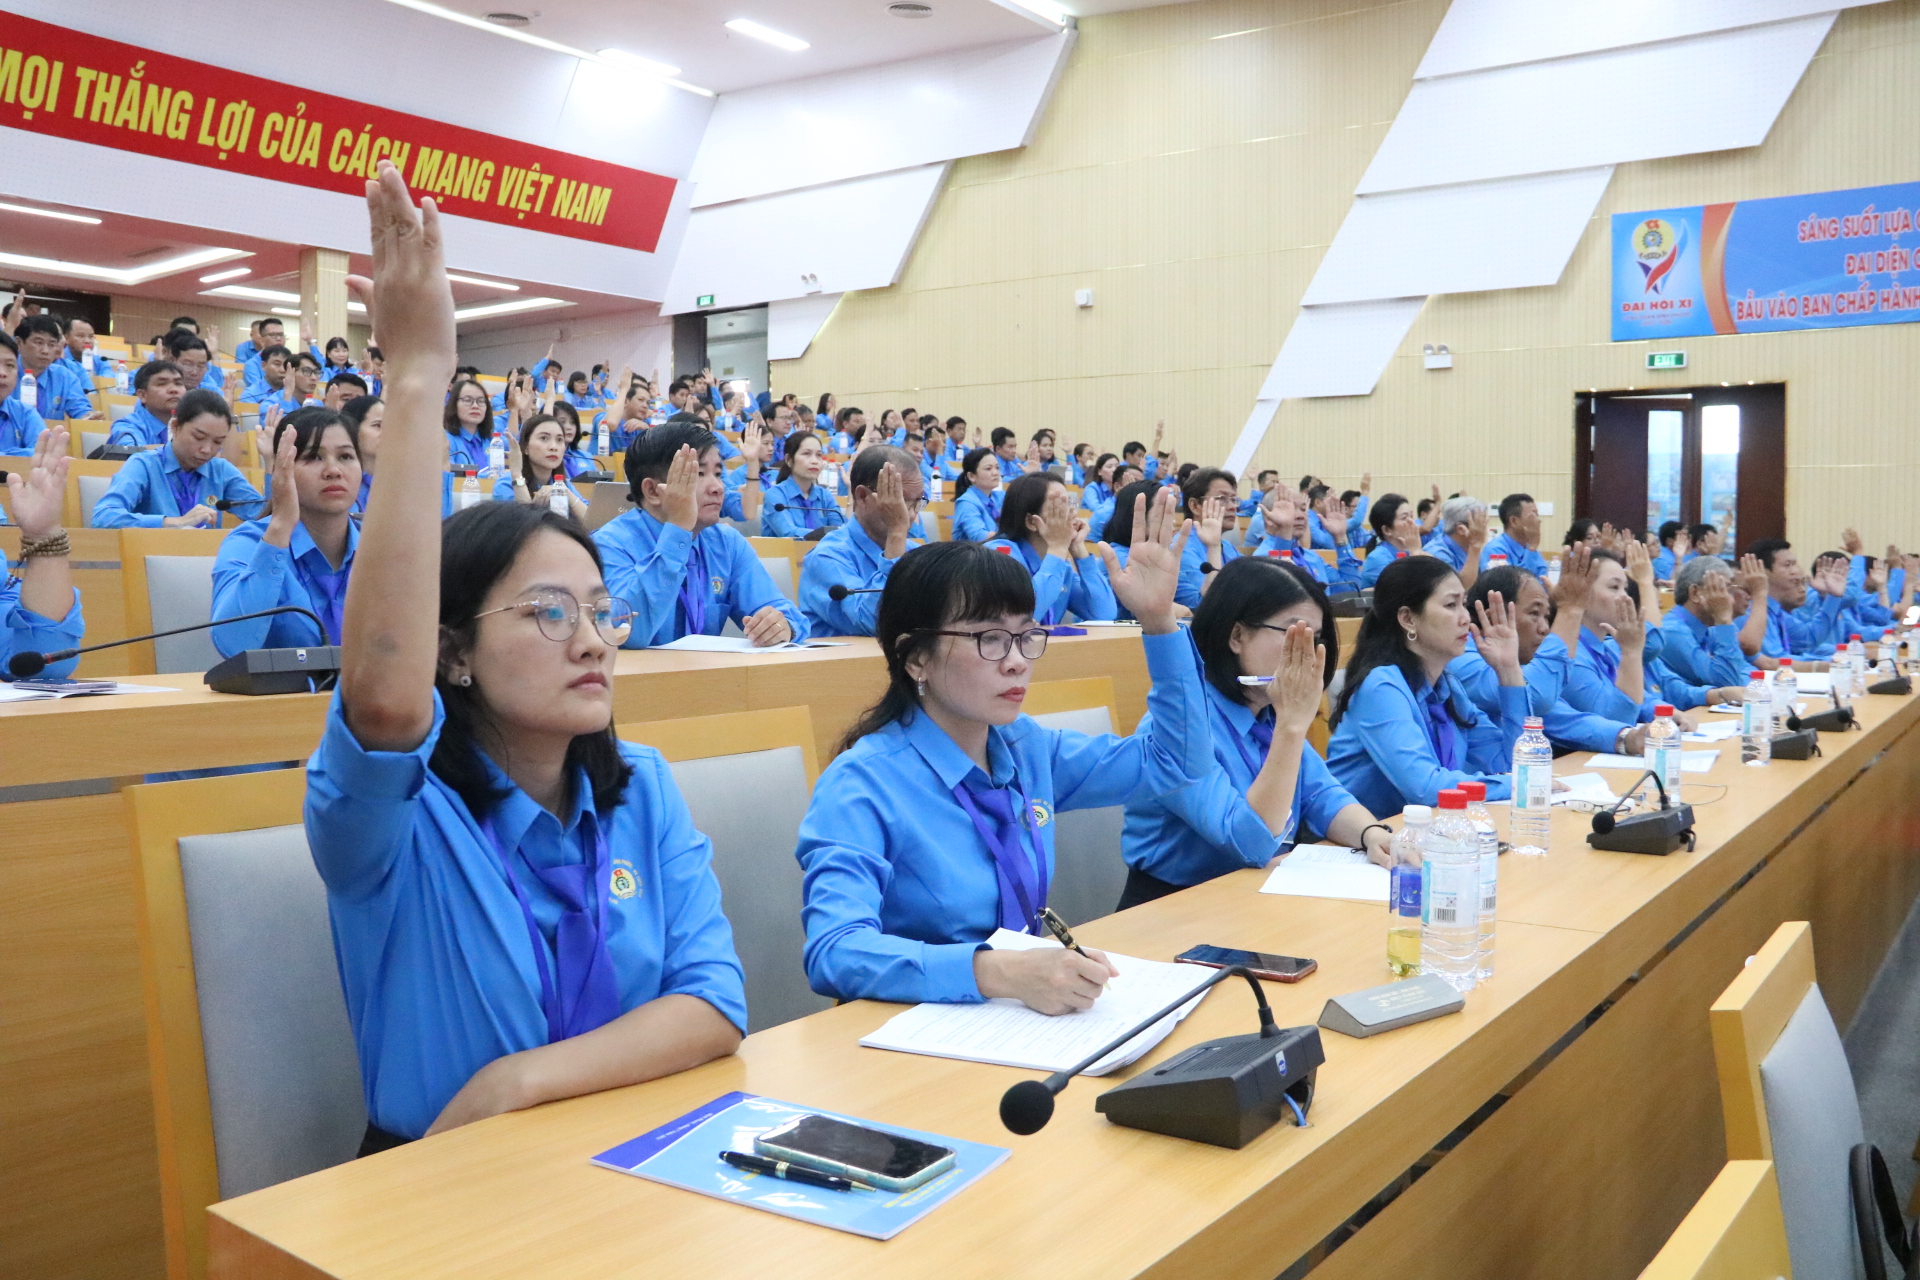 Các đại biểu giơ tay biểu quyết các nội dung của đại hội. Ảnh: Đình Trọng